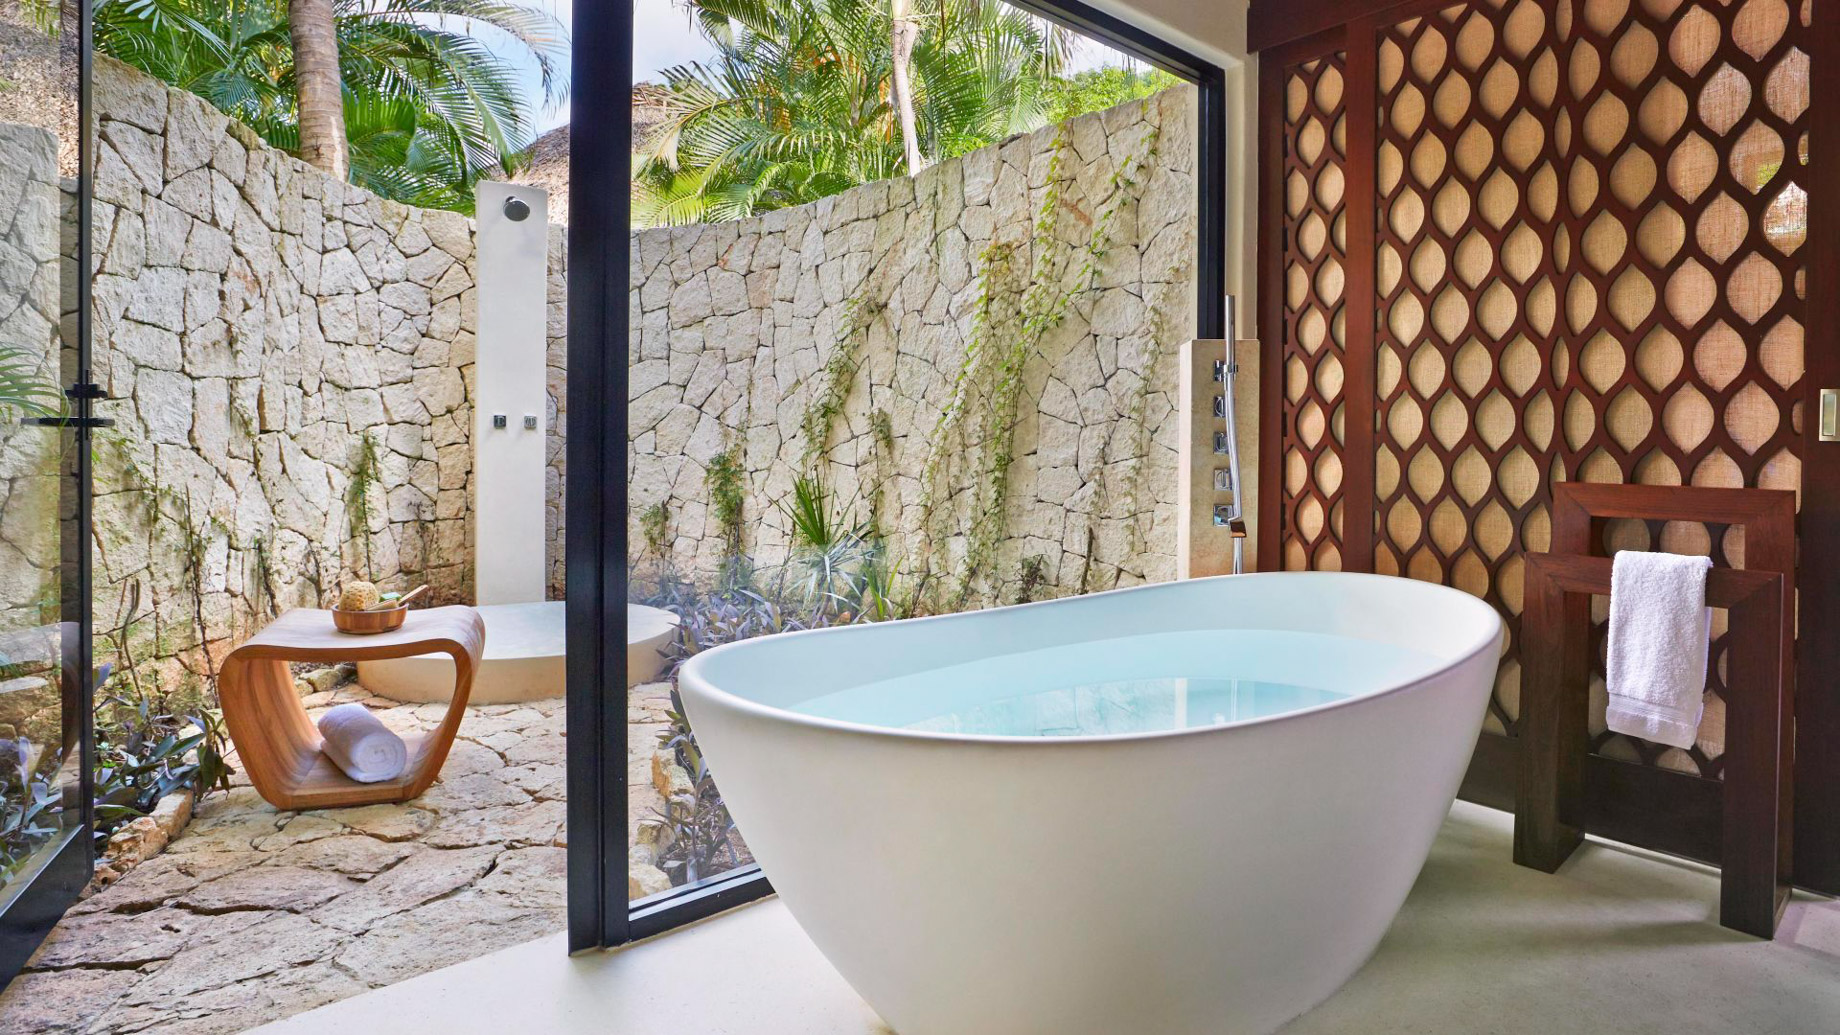 Viceroy Riviera Maya Resort – Playa del Carmen, Mexico – Signature Villa Bathroom